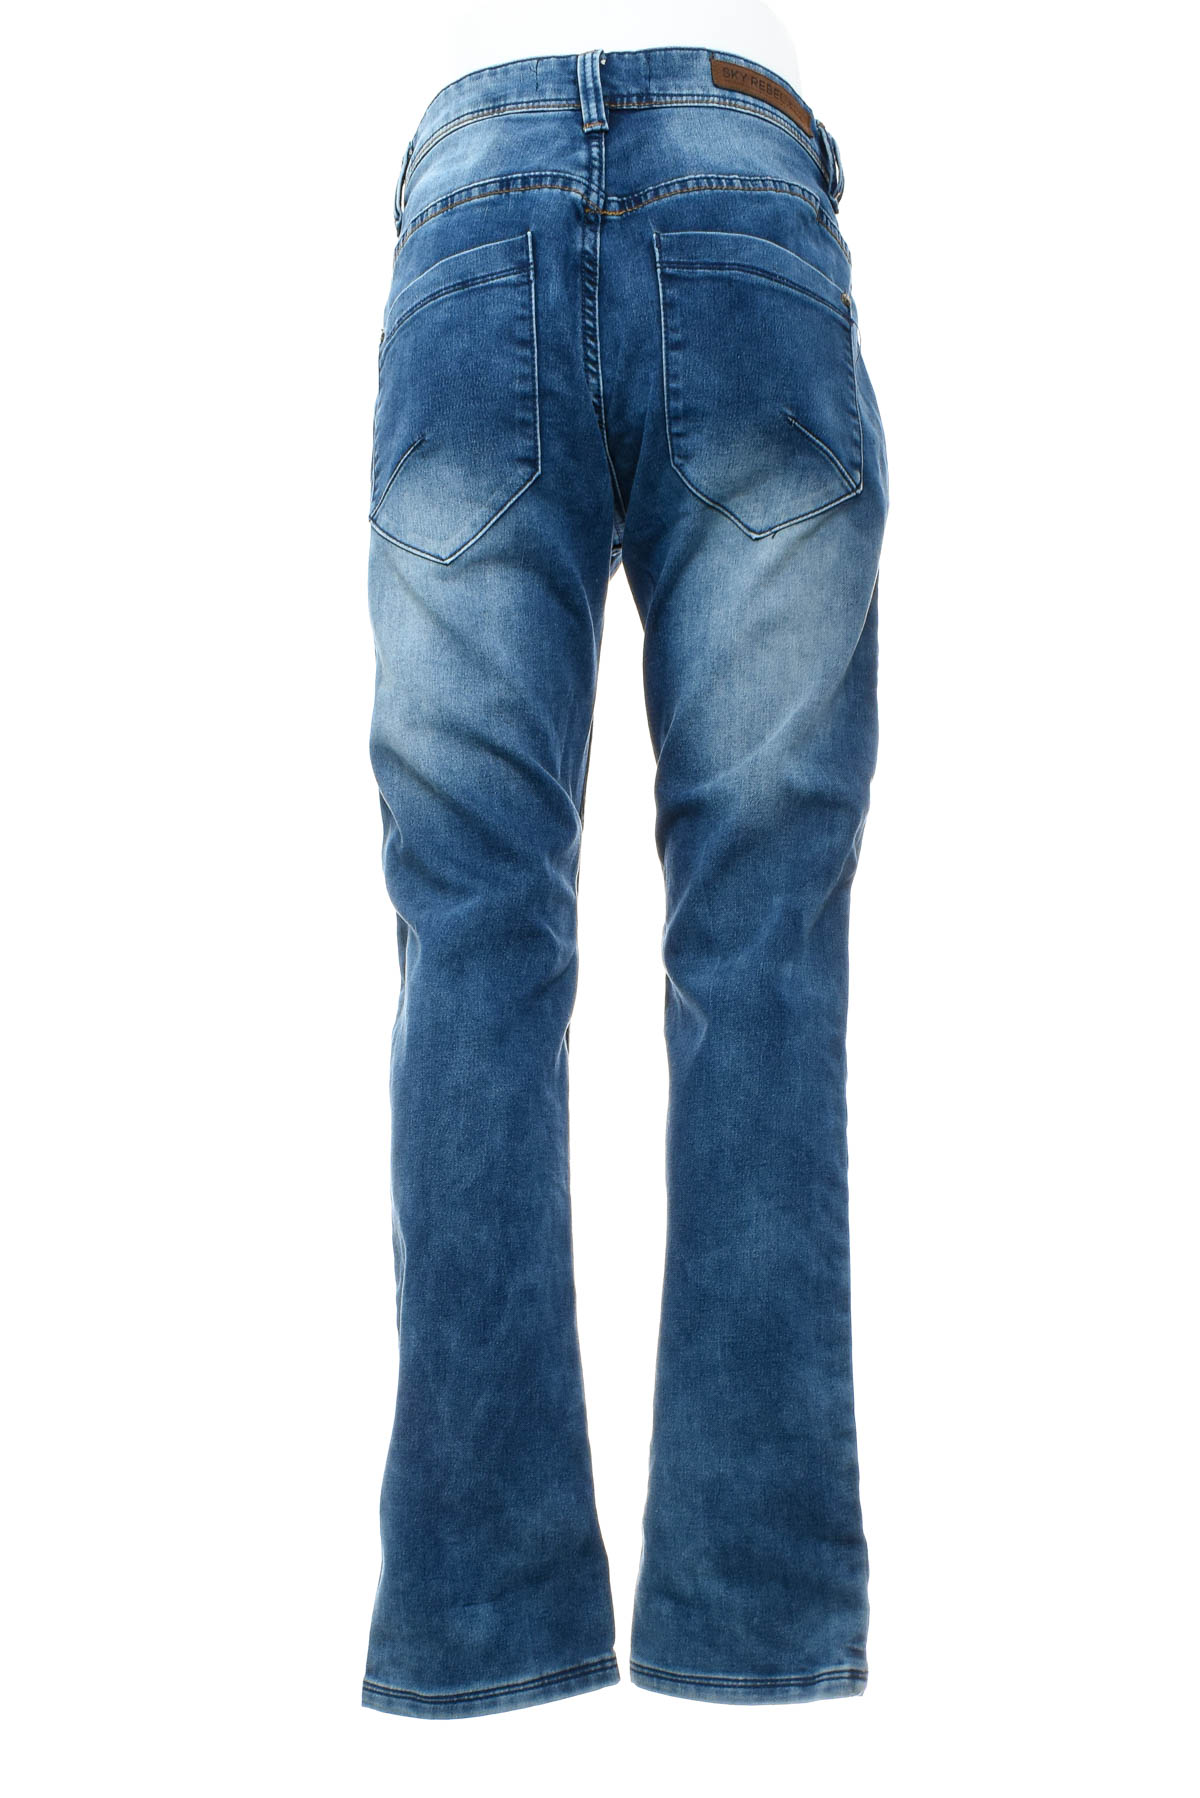 Men's jeans - SKY REBEL - 1